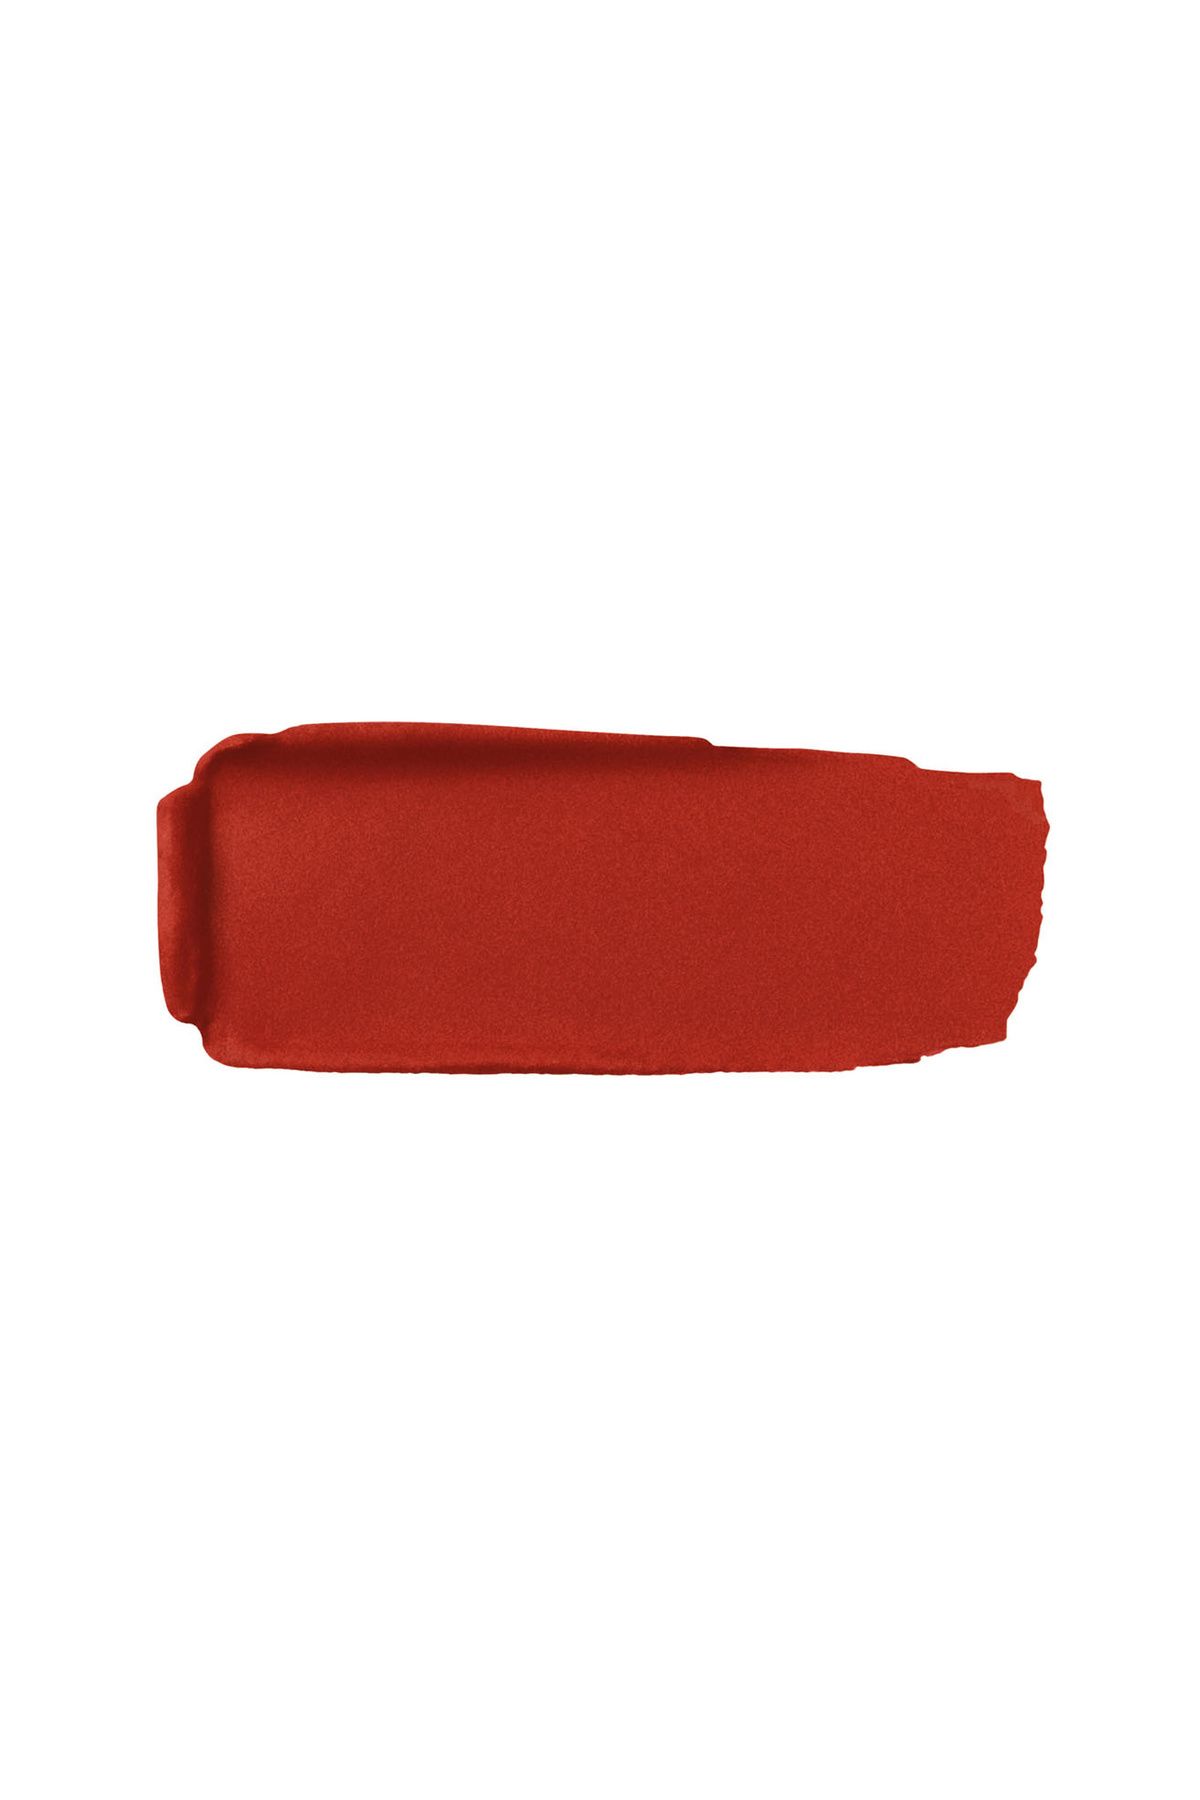 Guerlain رژ لب مات مخملی Rouge G حجیم کننده و نرم کننده لب ها رنگ قرمز جیغ شماره 214